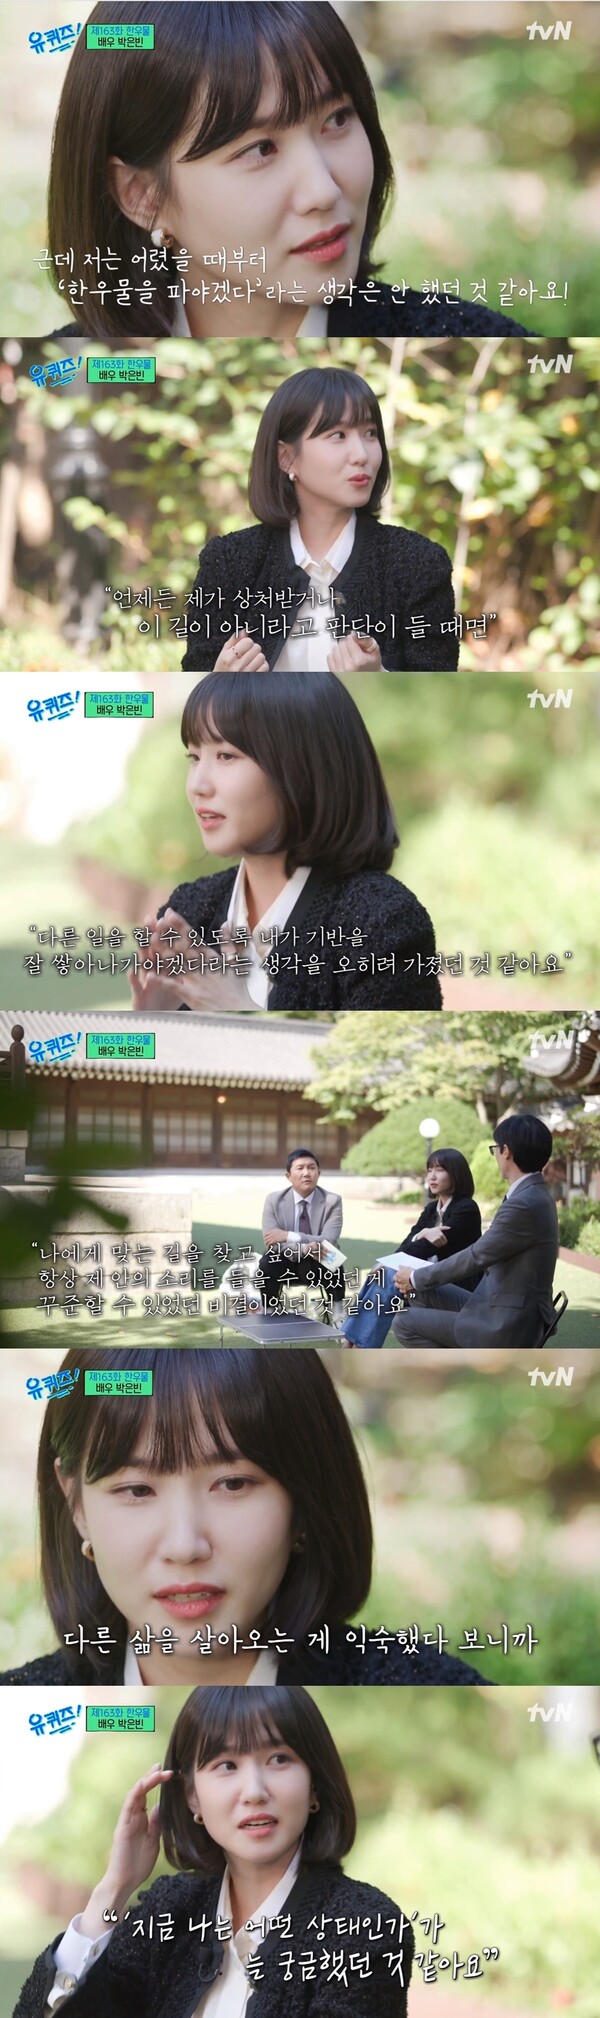 자신을 잘 살폈던 순간들은 박은빈이 스스로를 아낄 수 있는 자양분이 되었다. 출처: tvN ‘유 퀴즈 온 더 블럭’